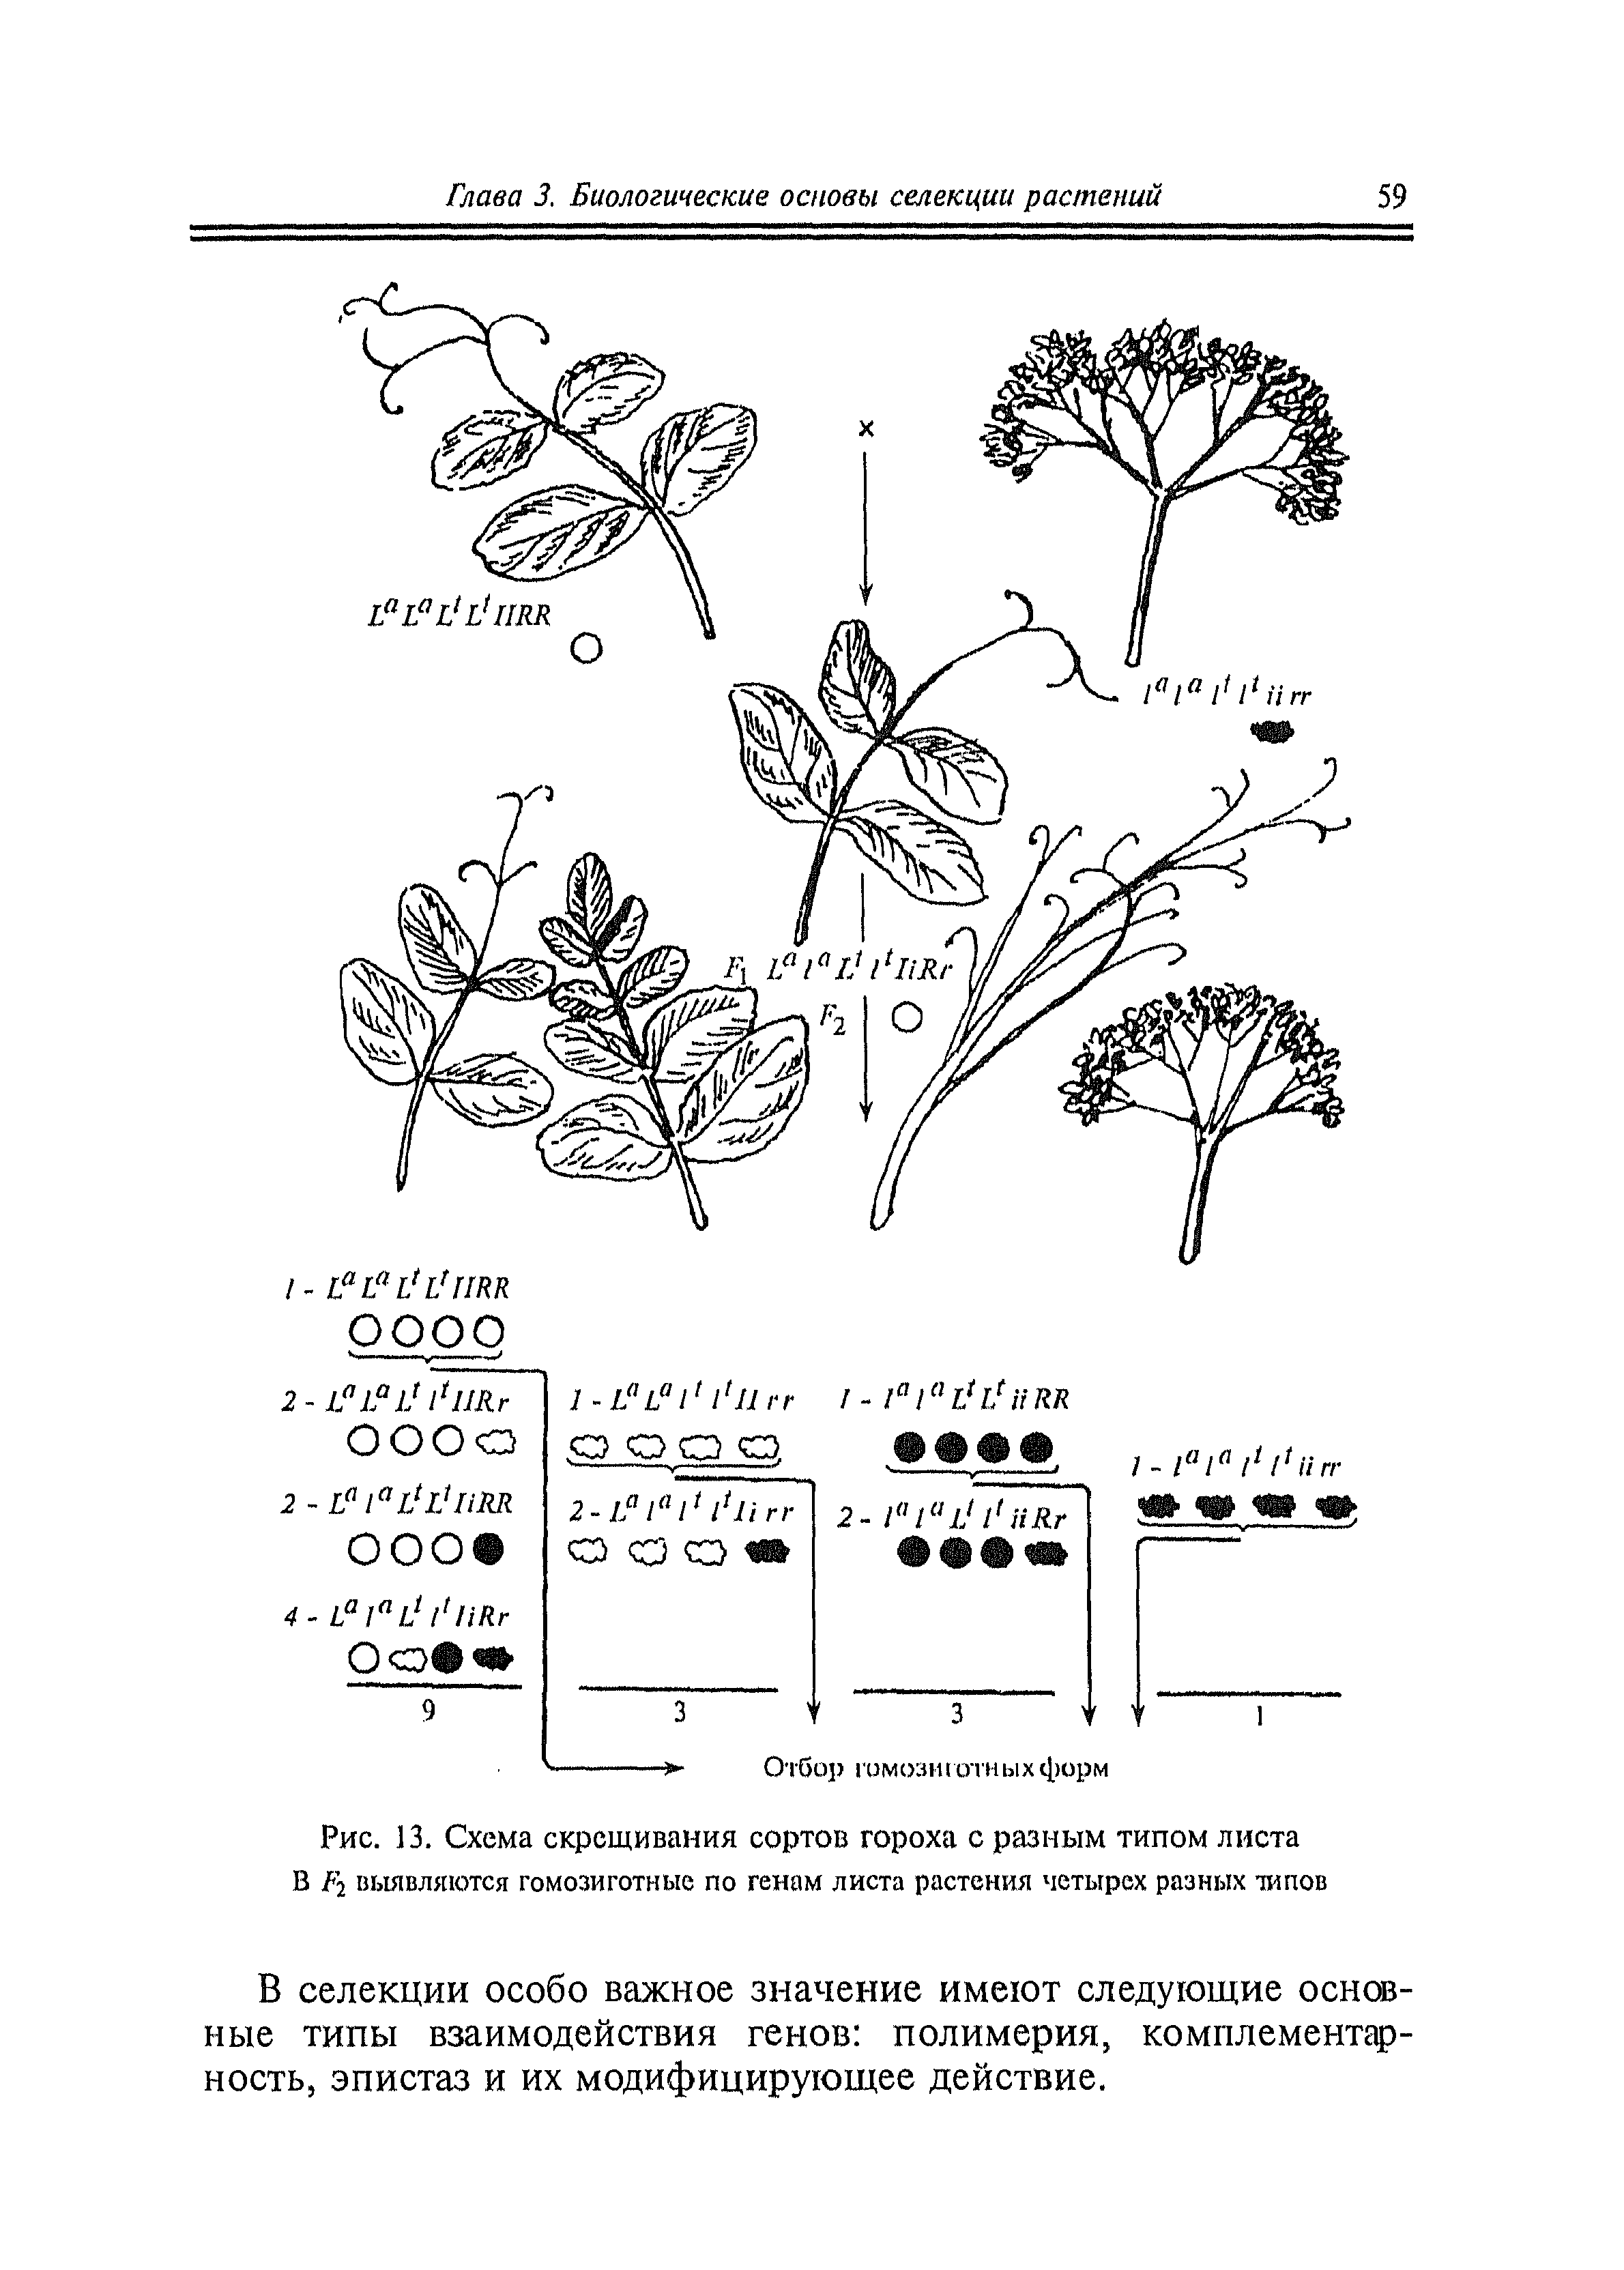 Рис. 13. Схема скрещивания сортов гороха с разным типом листа В Р-1 вьювляются гомозиготные по генам листа растения четырех разных типов
